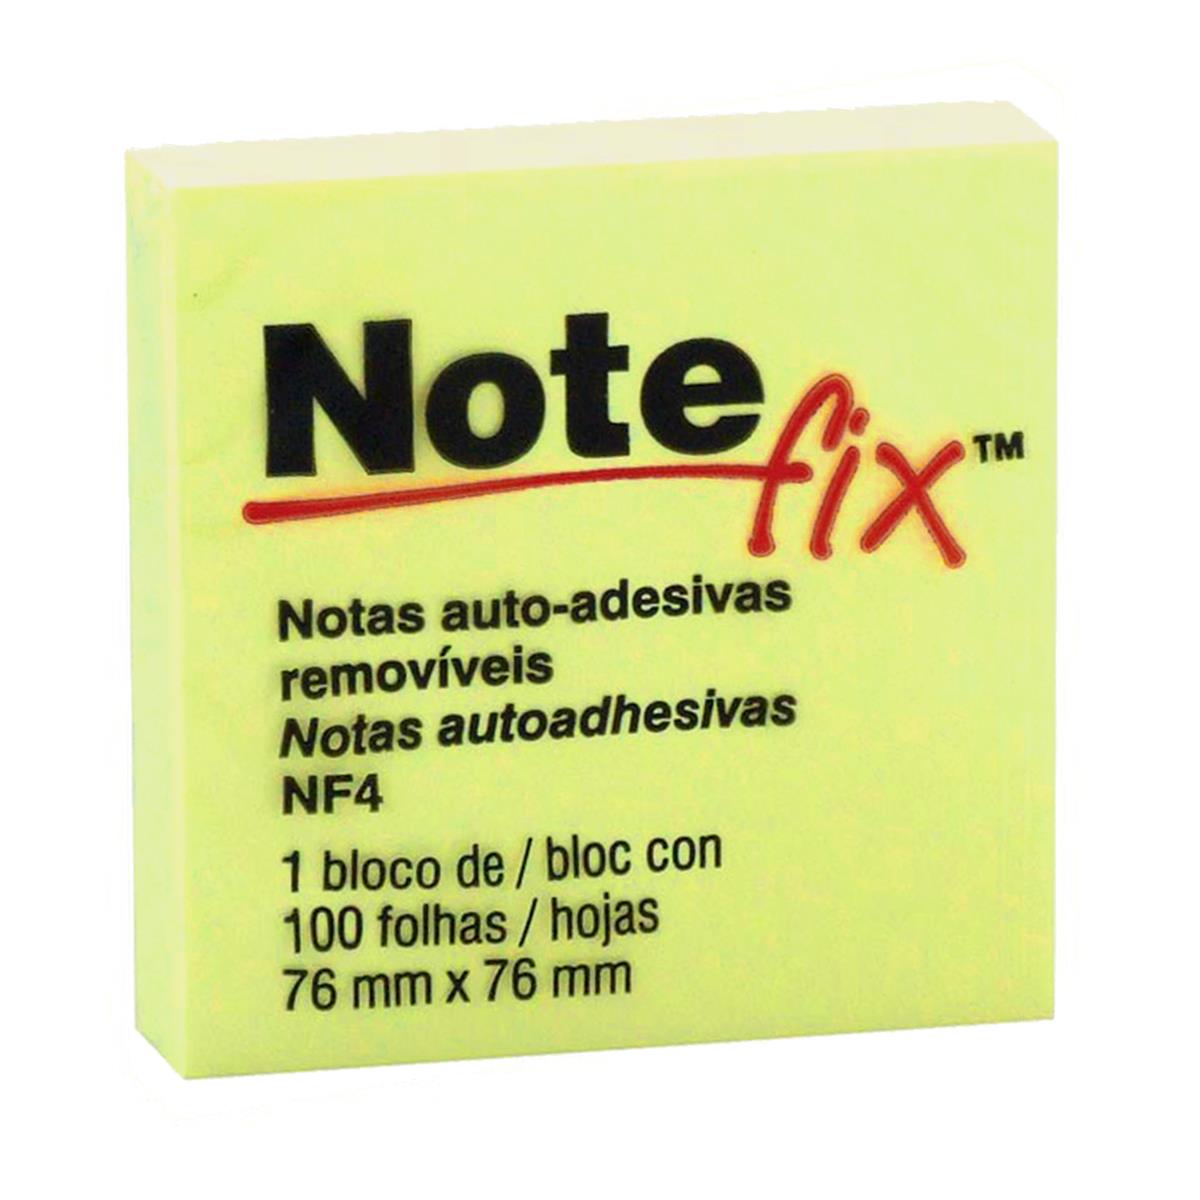 Bloco Notefix adesivo Amarelo 76×76 com 100 folhas 3M